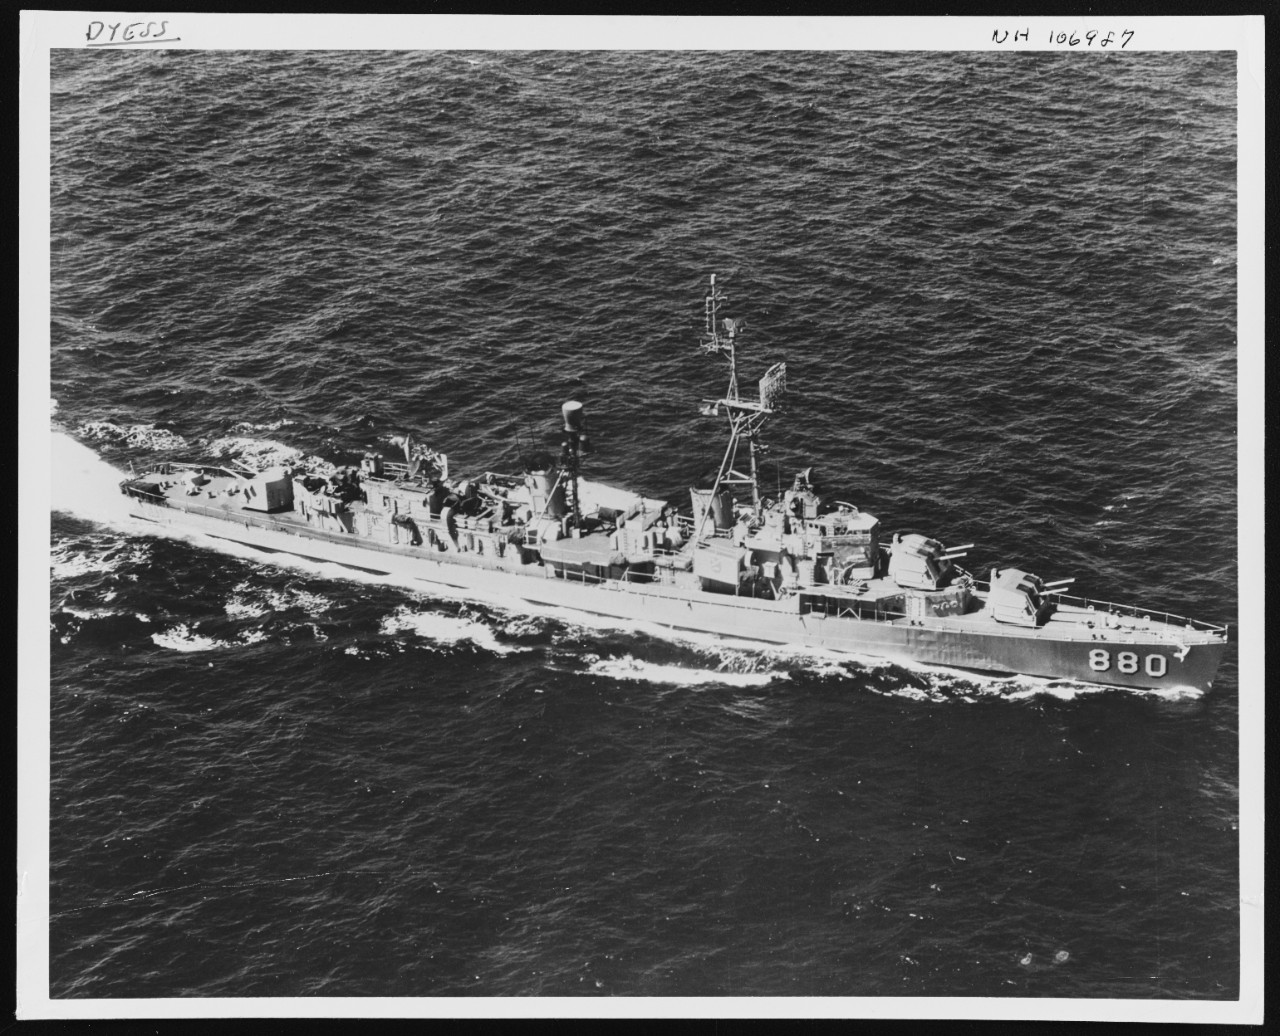 Photo # NH 106987  USS Dyess